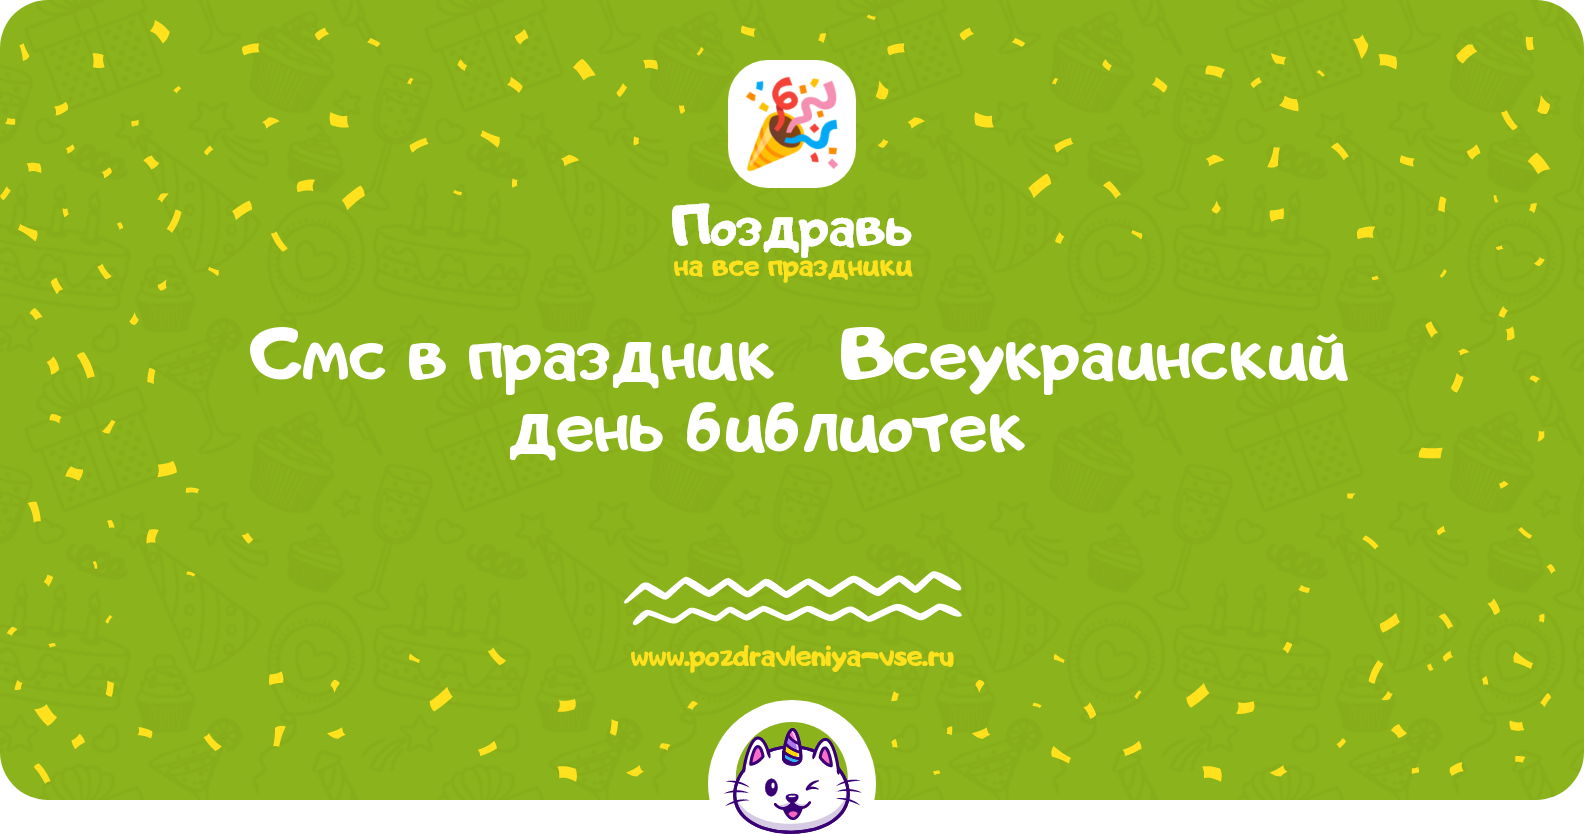 Смс поздравления в праздник «Всеукраинский день библиотек 1970-year»